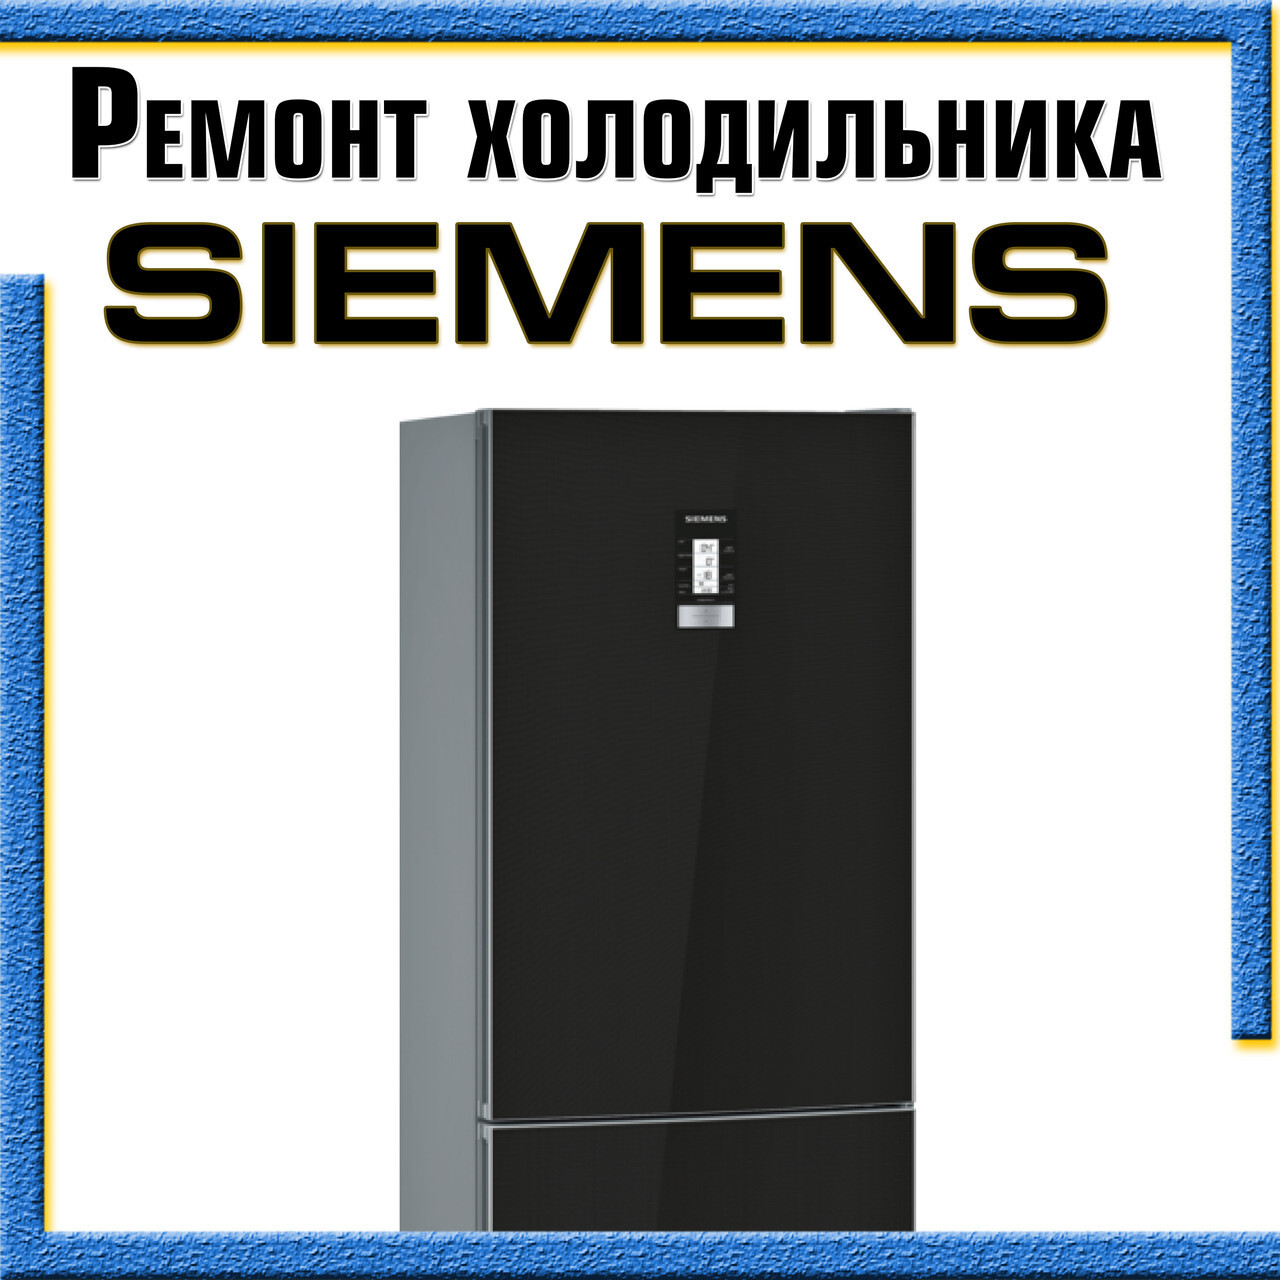 Ремонт холодильника Siemens на дому